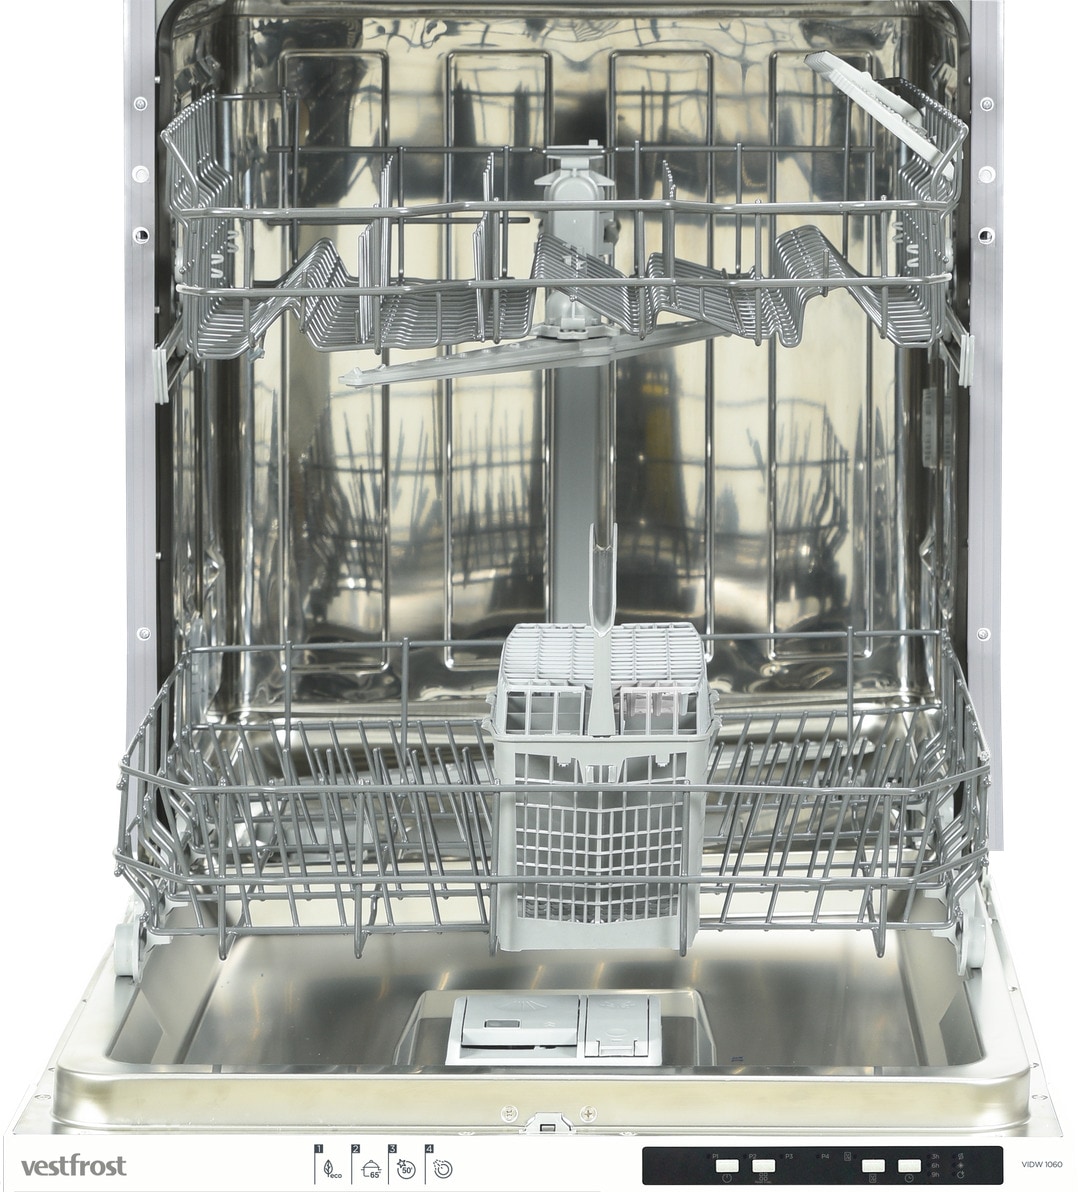 Vestfrost integrert oppvaskmaskin VIDW1060 - Elkjøp